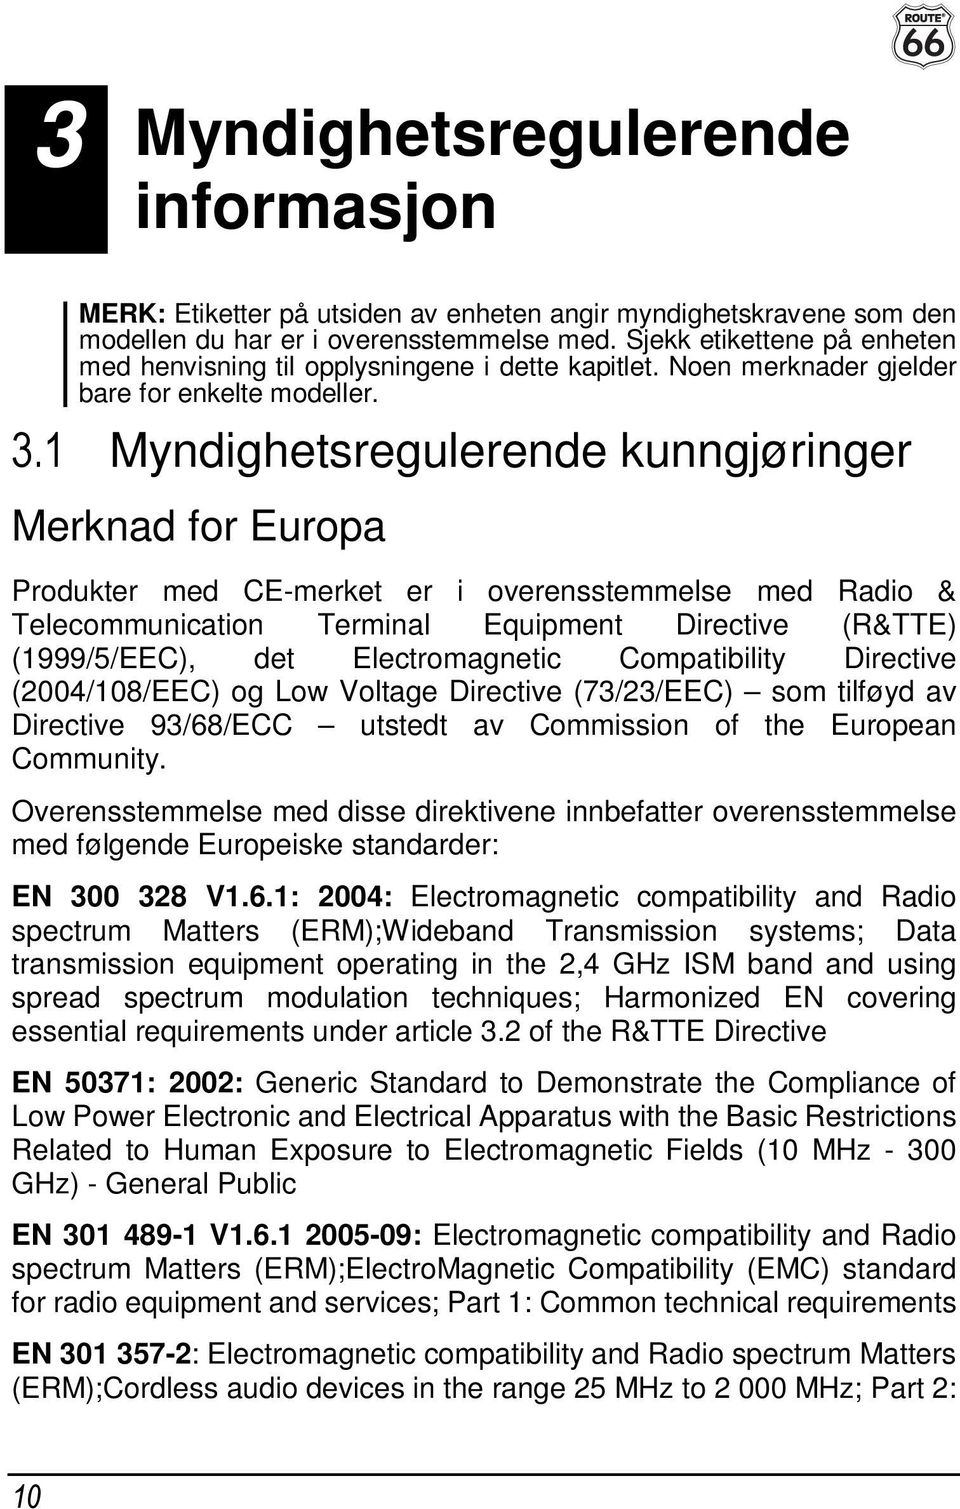 1 Myndighetsregulerende kunngjøringer Merknad for Europa Produkter med CE-merket er i overensstemmelse med Radio & Telecommunication Terminal Equipment Directive (R&TTE) (1999/5/EEC), det